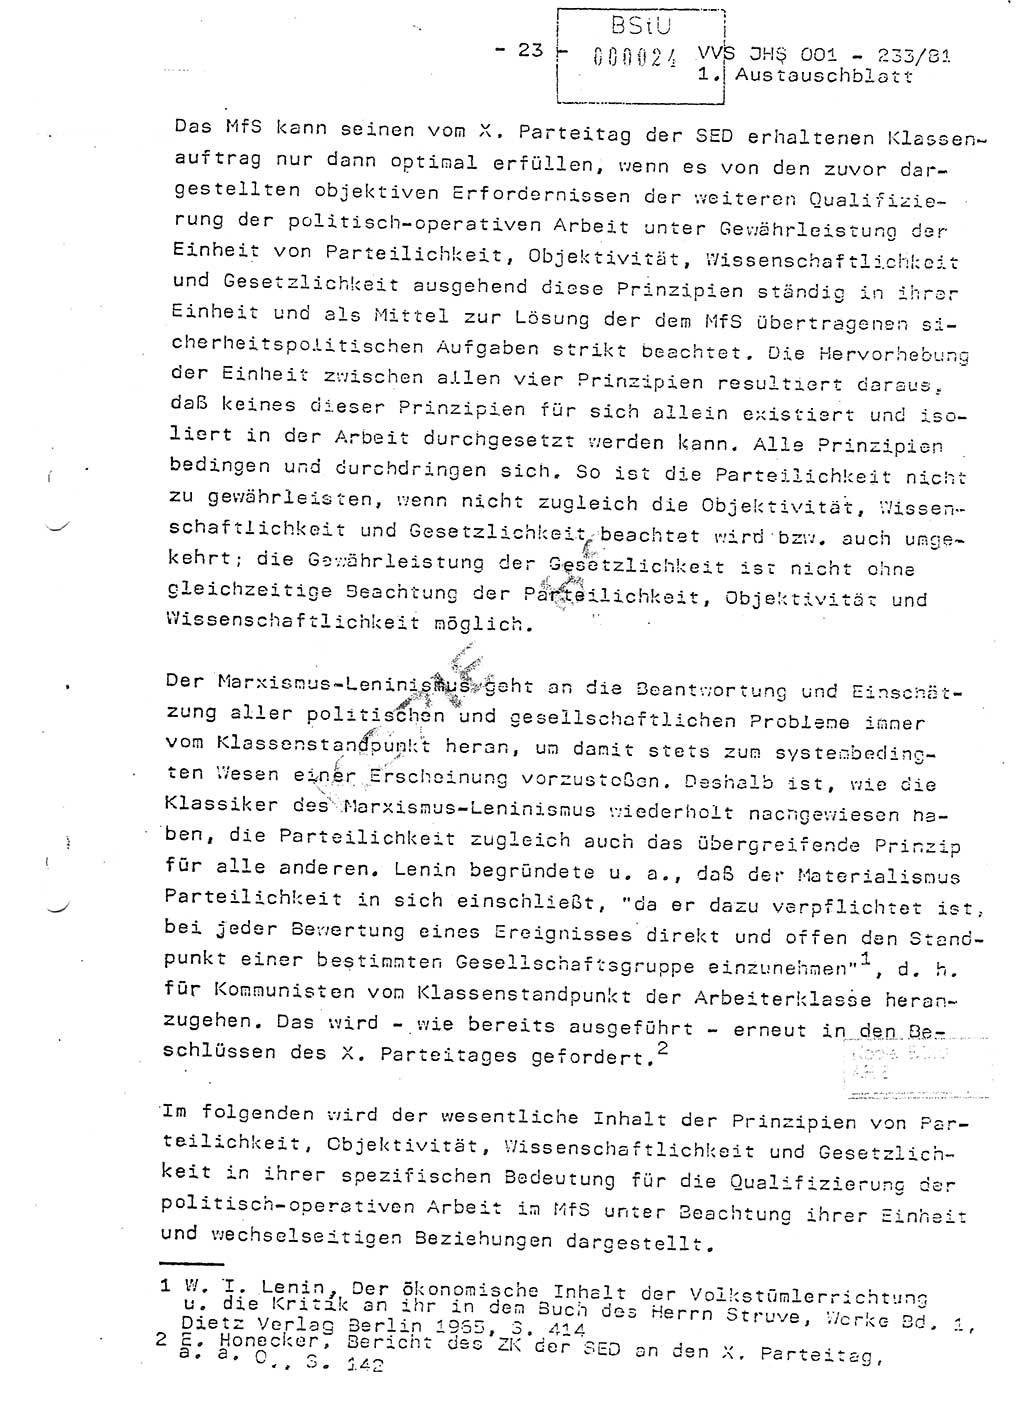 Dissertation Oberstleutnant Horst Zank (JHS), Oberstleutnant Dr. Karl-Heinz Knoblauch (JHS), Oberstleutnant Gustav-Adolf Kowalewski (HA Ⅸ), Oberstleutnant Wolfgang Plötner (HA Ⅸ), Ministerium für Staatssicherheit (MfS) [Deutsche Demokratische Republik (DDR)], Juristische Hochschule (JHS), Vertrauliche Verschlußsache (VVS) o001-233/81, Potsdam 1981, Blatt 24 (Diss. MfS DDR JHS VVS o001-233/81 1981, Bl. 24)